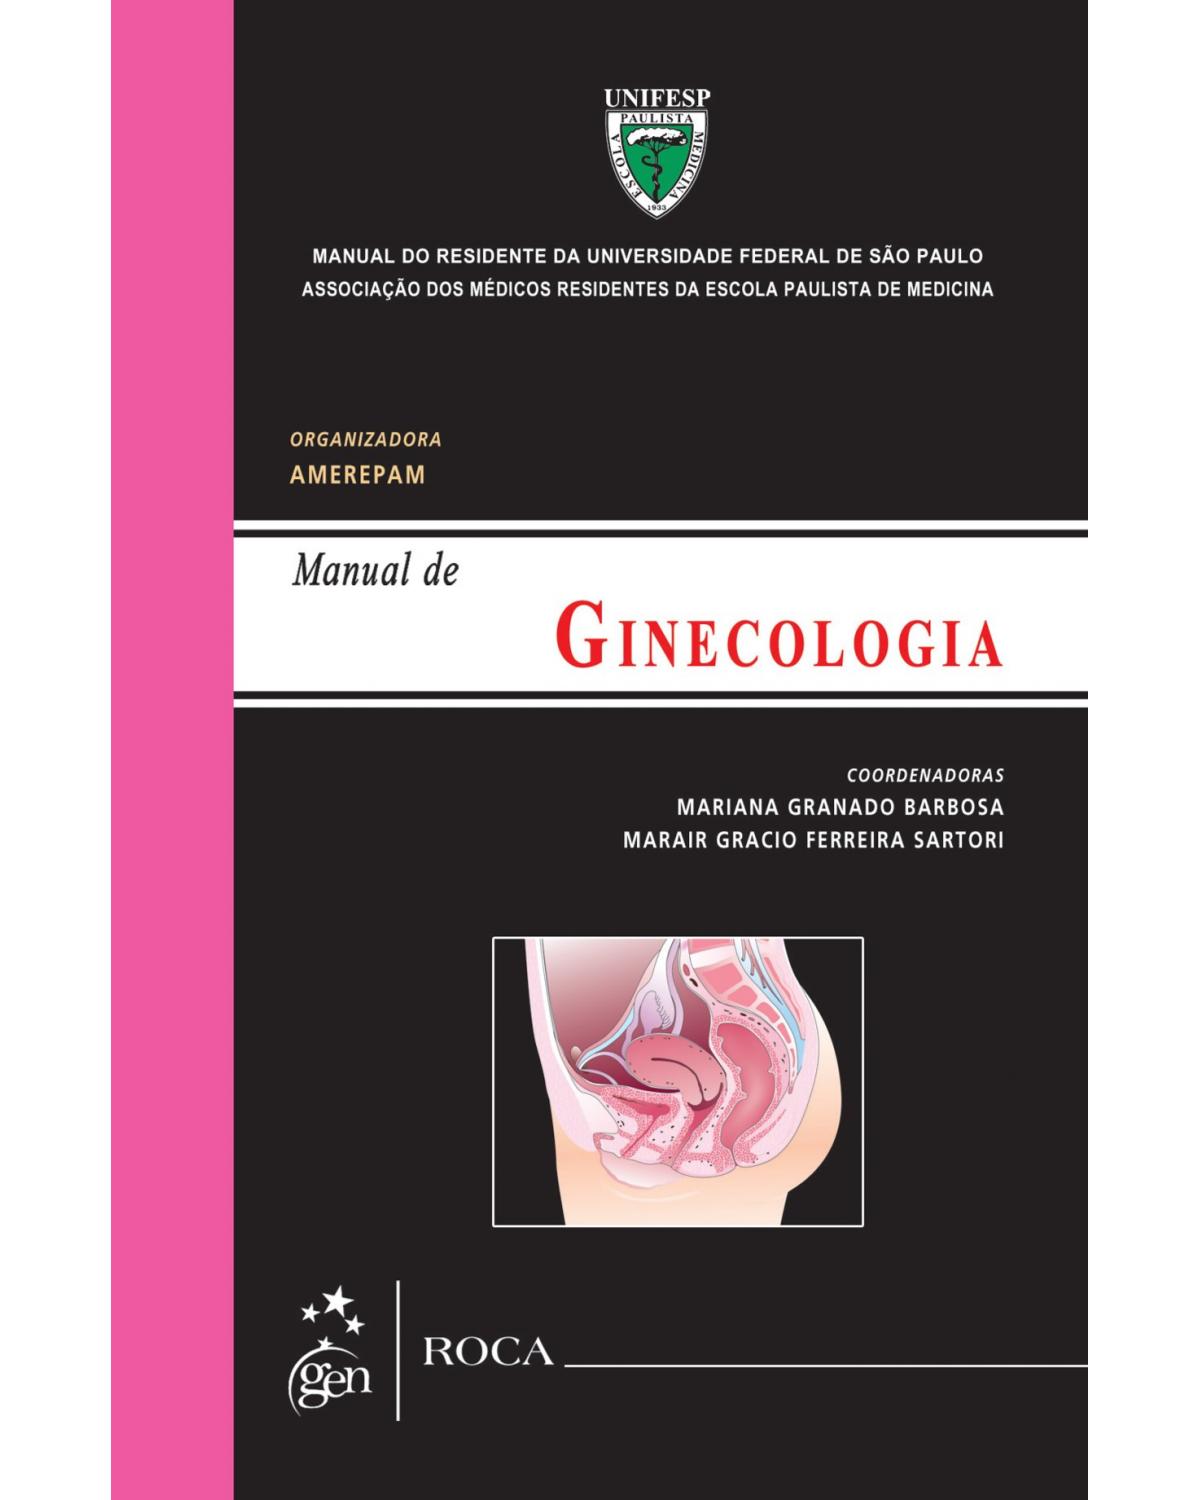 Manual de ginecologia - Manual do residente da Universidade Federal de São Paulo (UNIFESP) - 1ª Edição | 2013